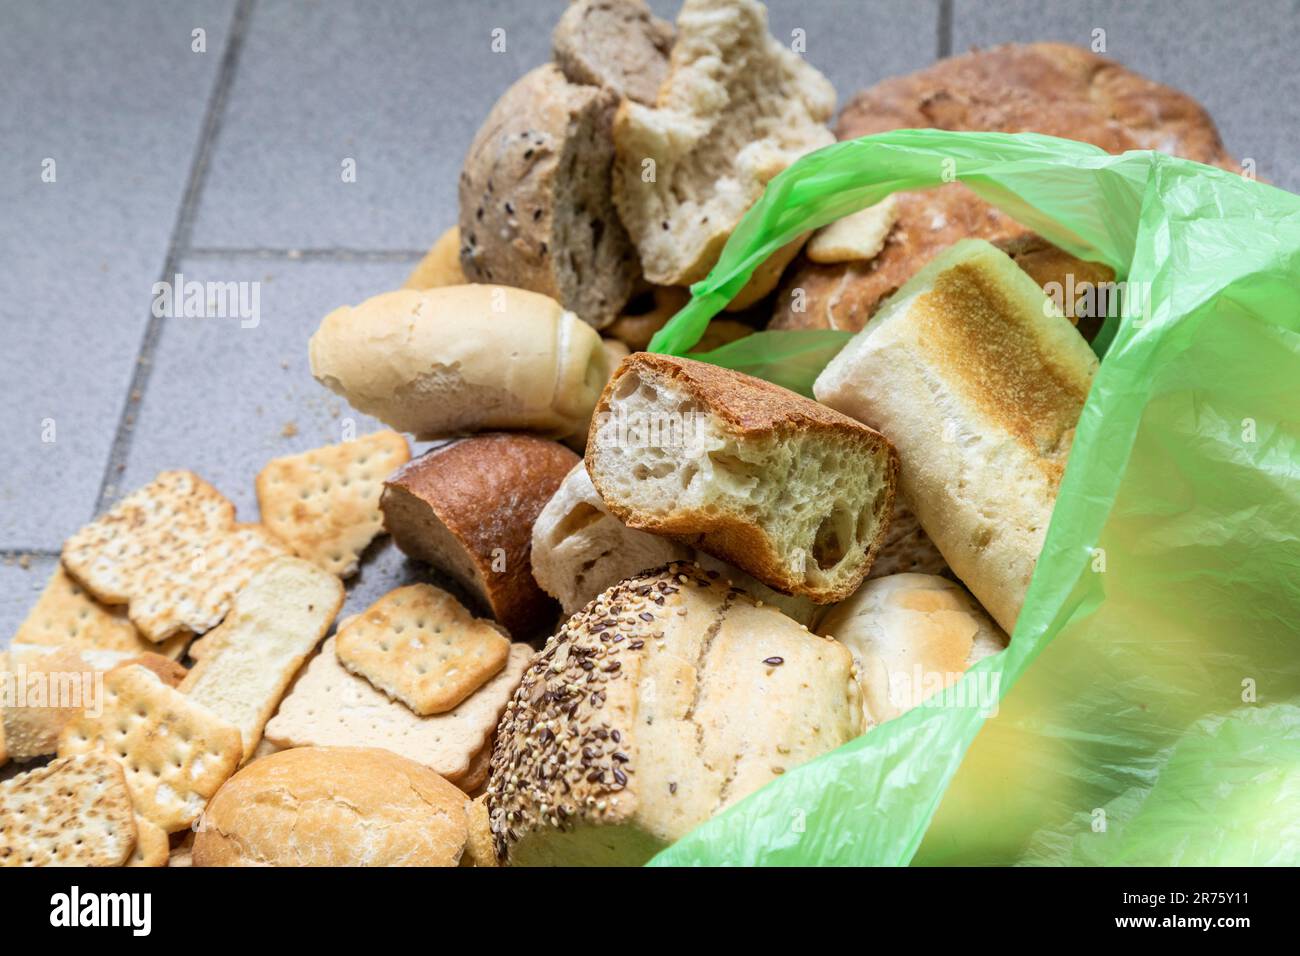 Italie, grande quantité de pain rassis dans différents formats, déchets alimentaires, nourriture non consommée Banque D'Images